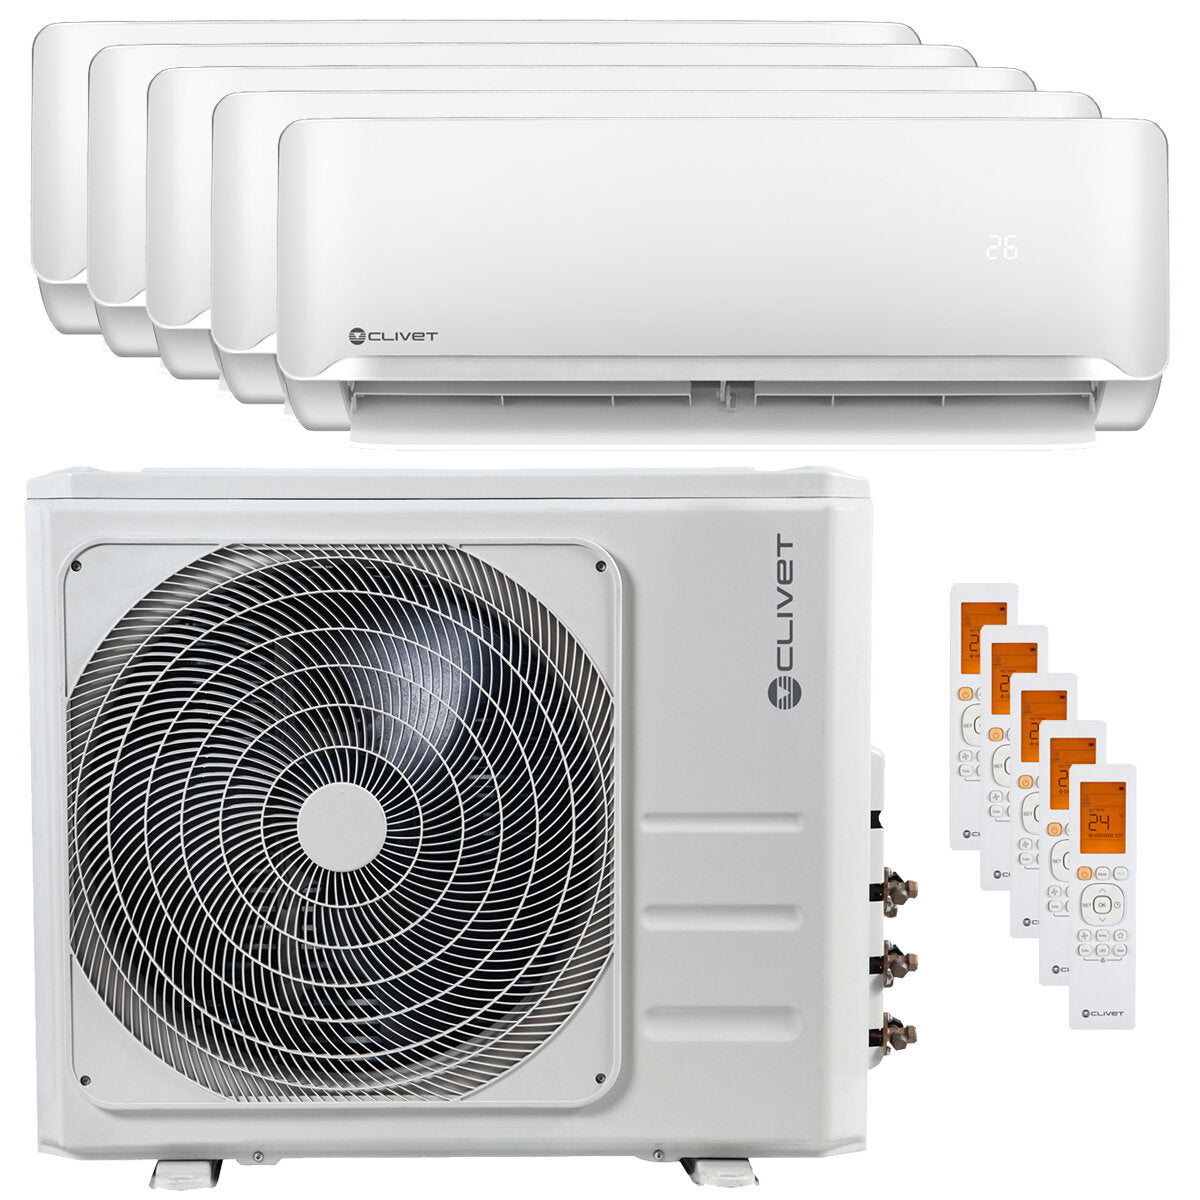 Clivet Essential 2 air conditioner penta split 9000 + 9000 + 9000 + 9000 + 12000 BTU inverter A ++ outdoor unit 12.3 kW